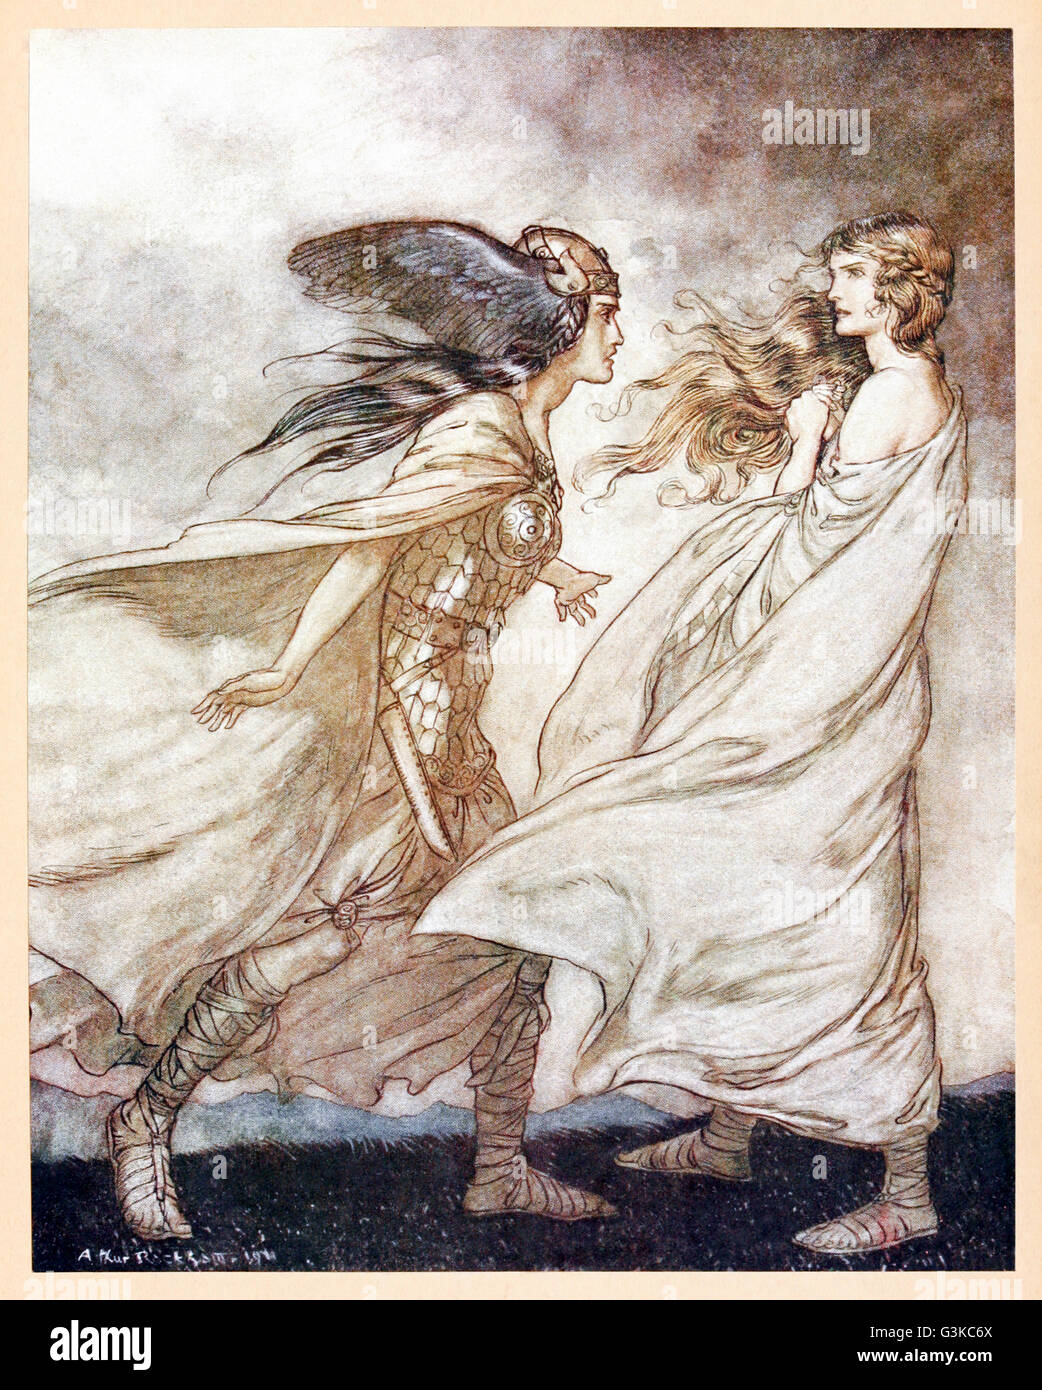 "Der Ring nach deiner Hand -... Ach, werden flehte! Für Wotan werfen sie Weg!"von"Siegfried & The Twilight of the Gods"illustriert von Arthur Rackham (1867-1939). Siehe Beschreibung für mehr Informationen. Stockfoto